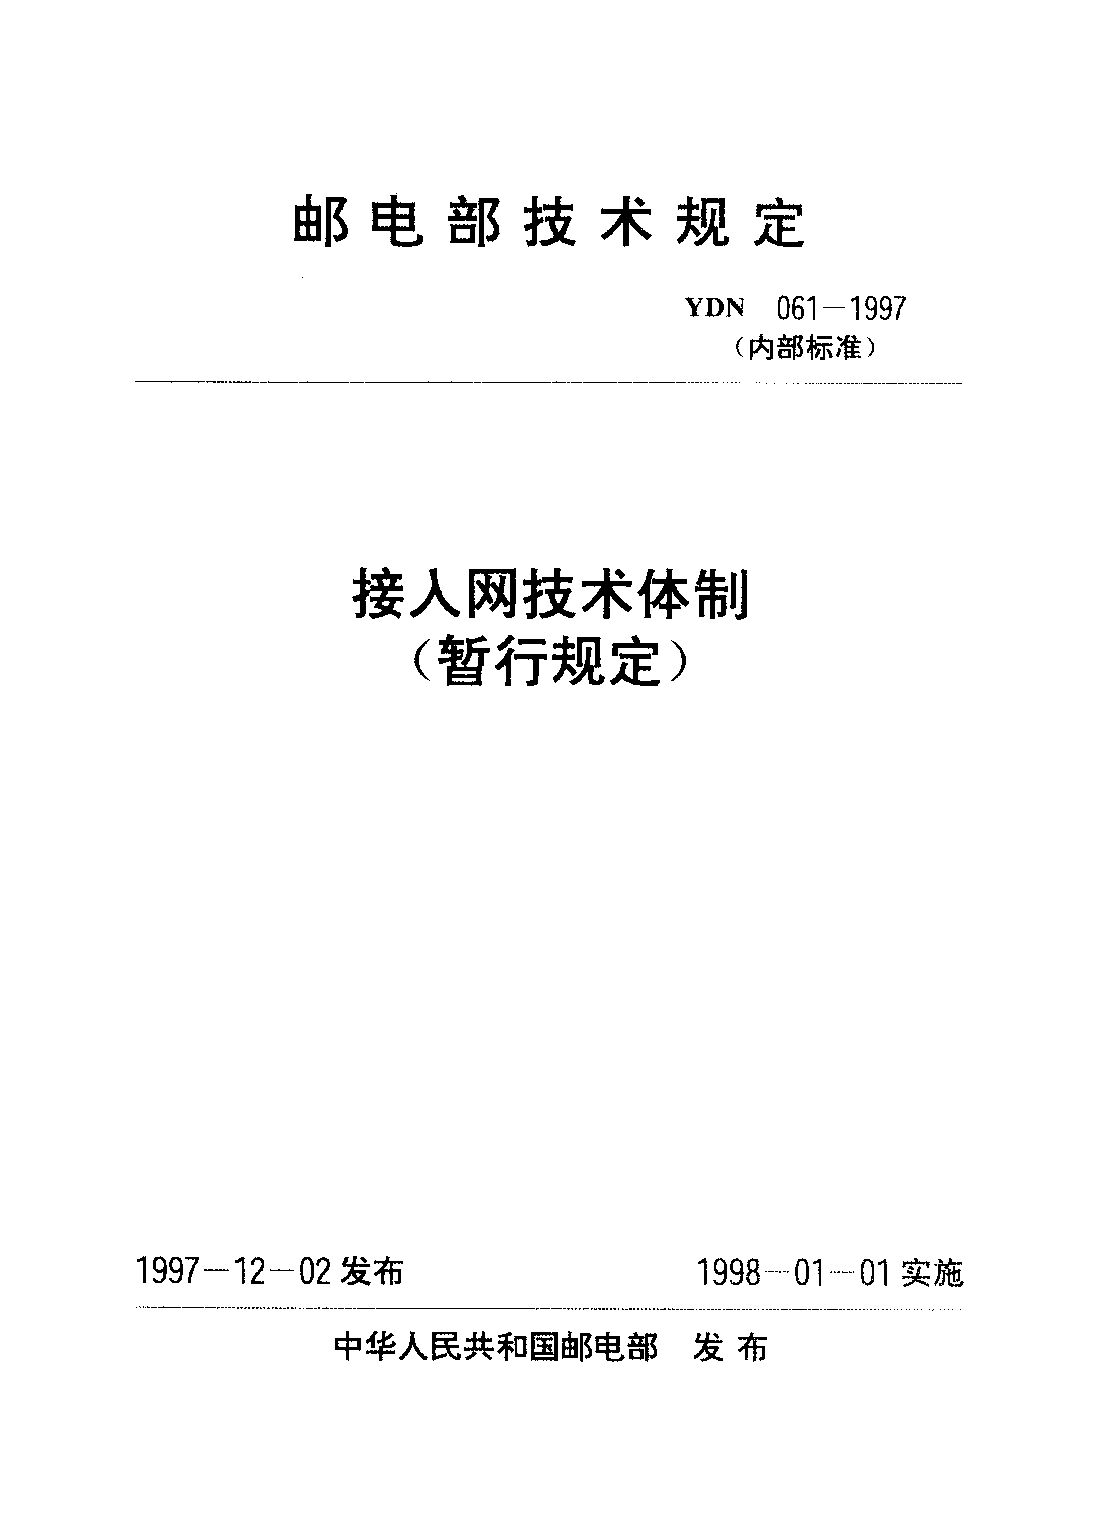 YDN 061-1997封面图